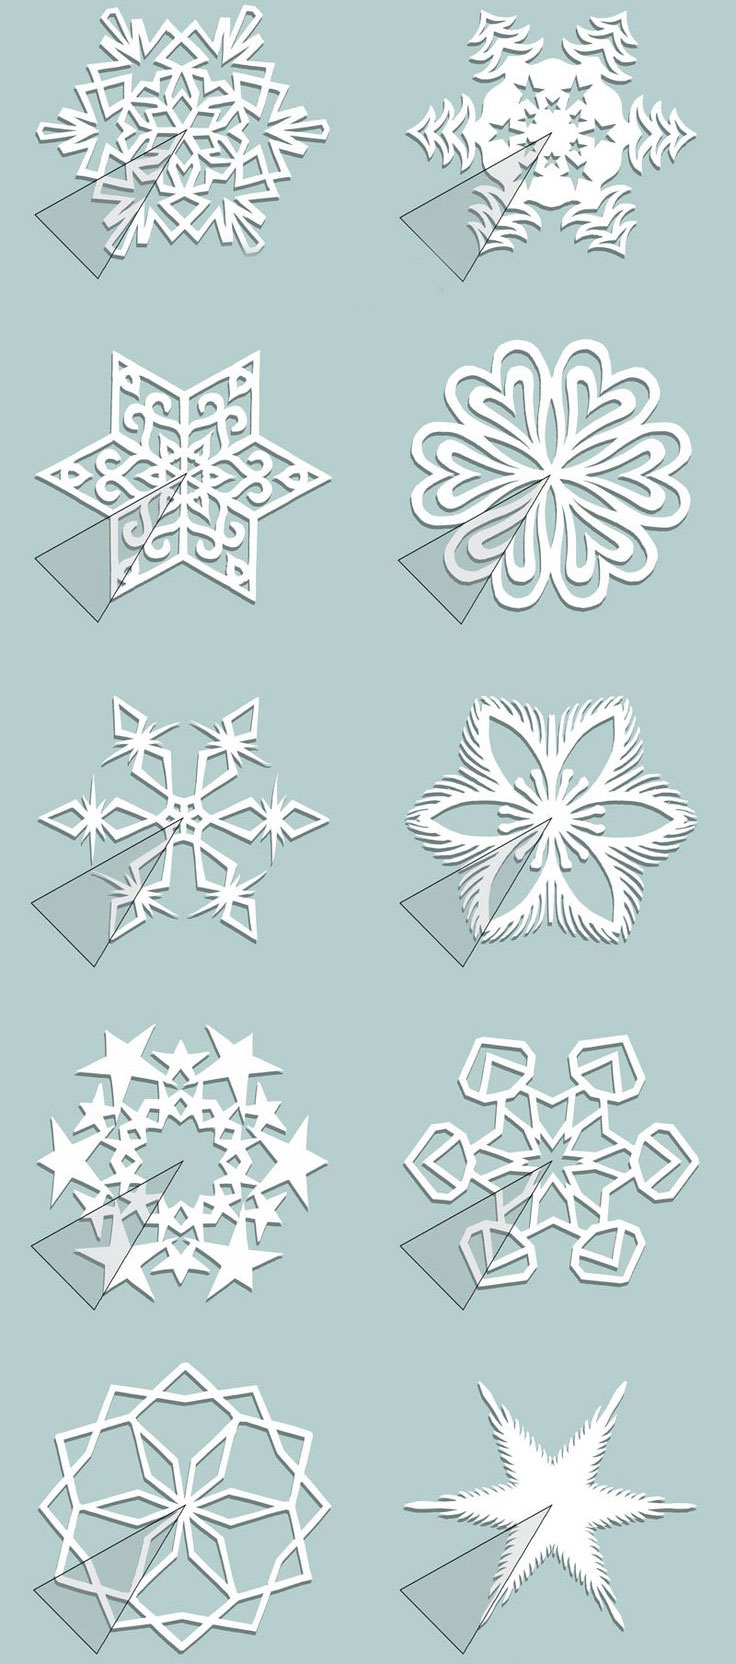 ак сделать красивые снежинки из бумаги на Новый год 9